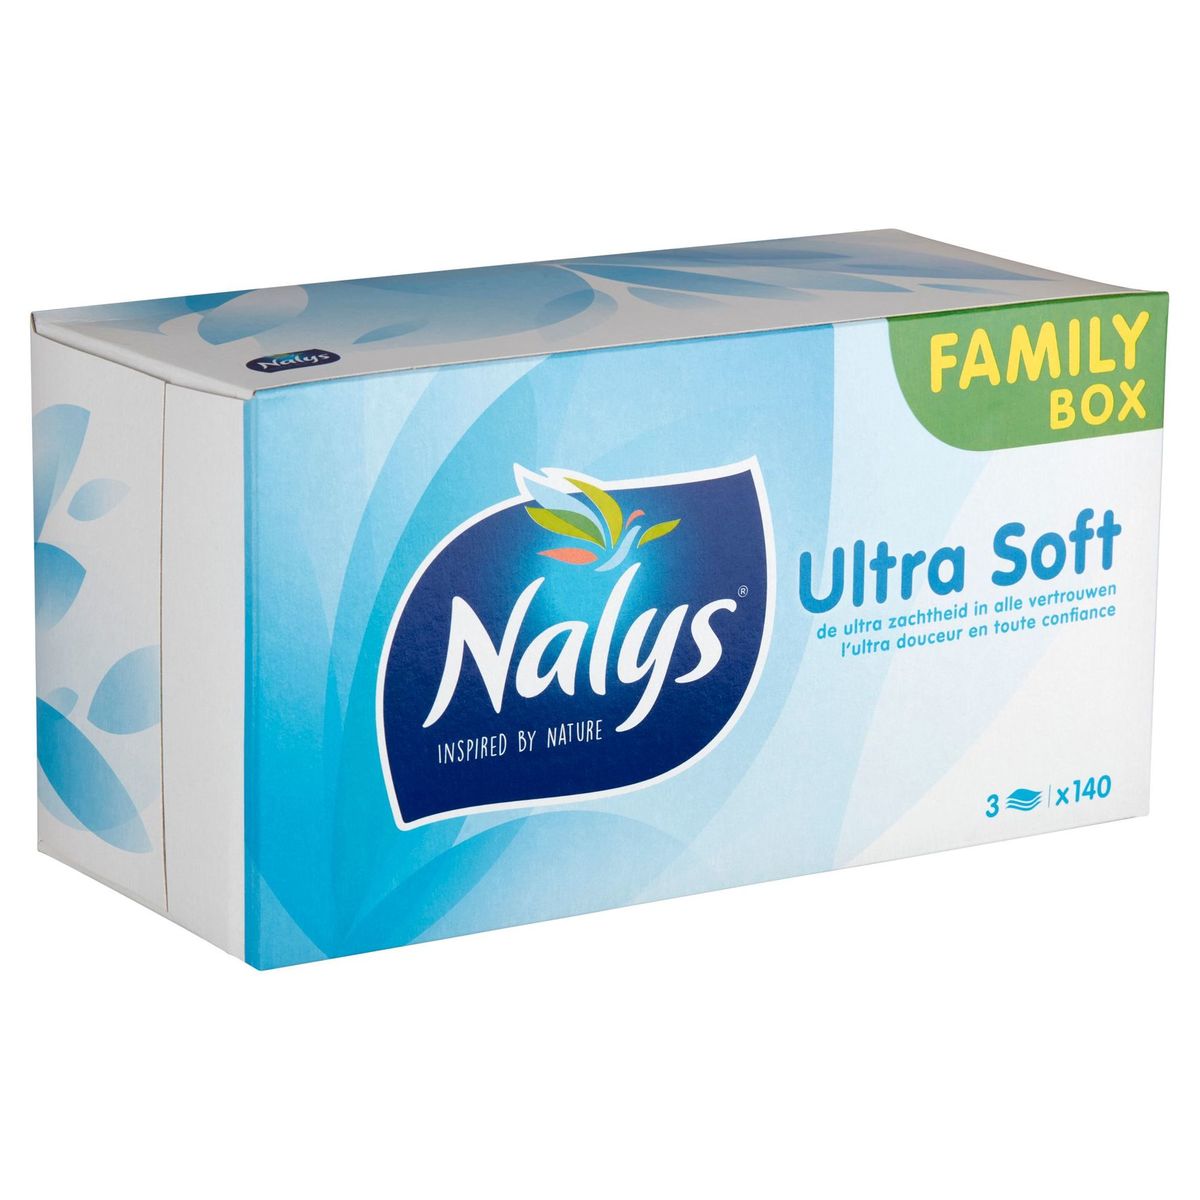 Nalys Ultra Soft Family Box 3 Lagen 140 Stuks